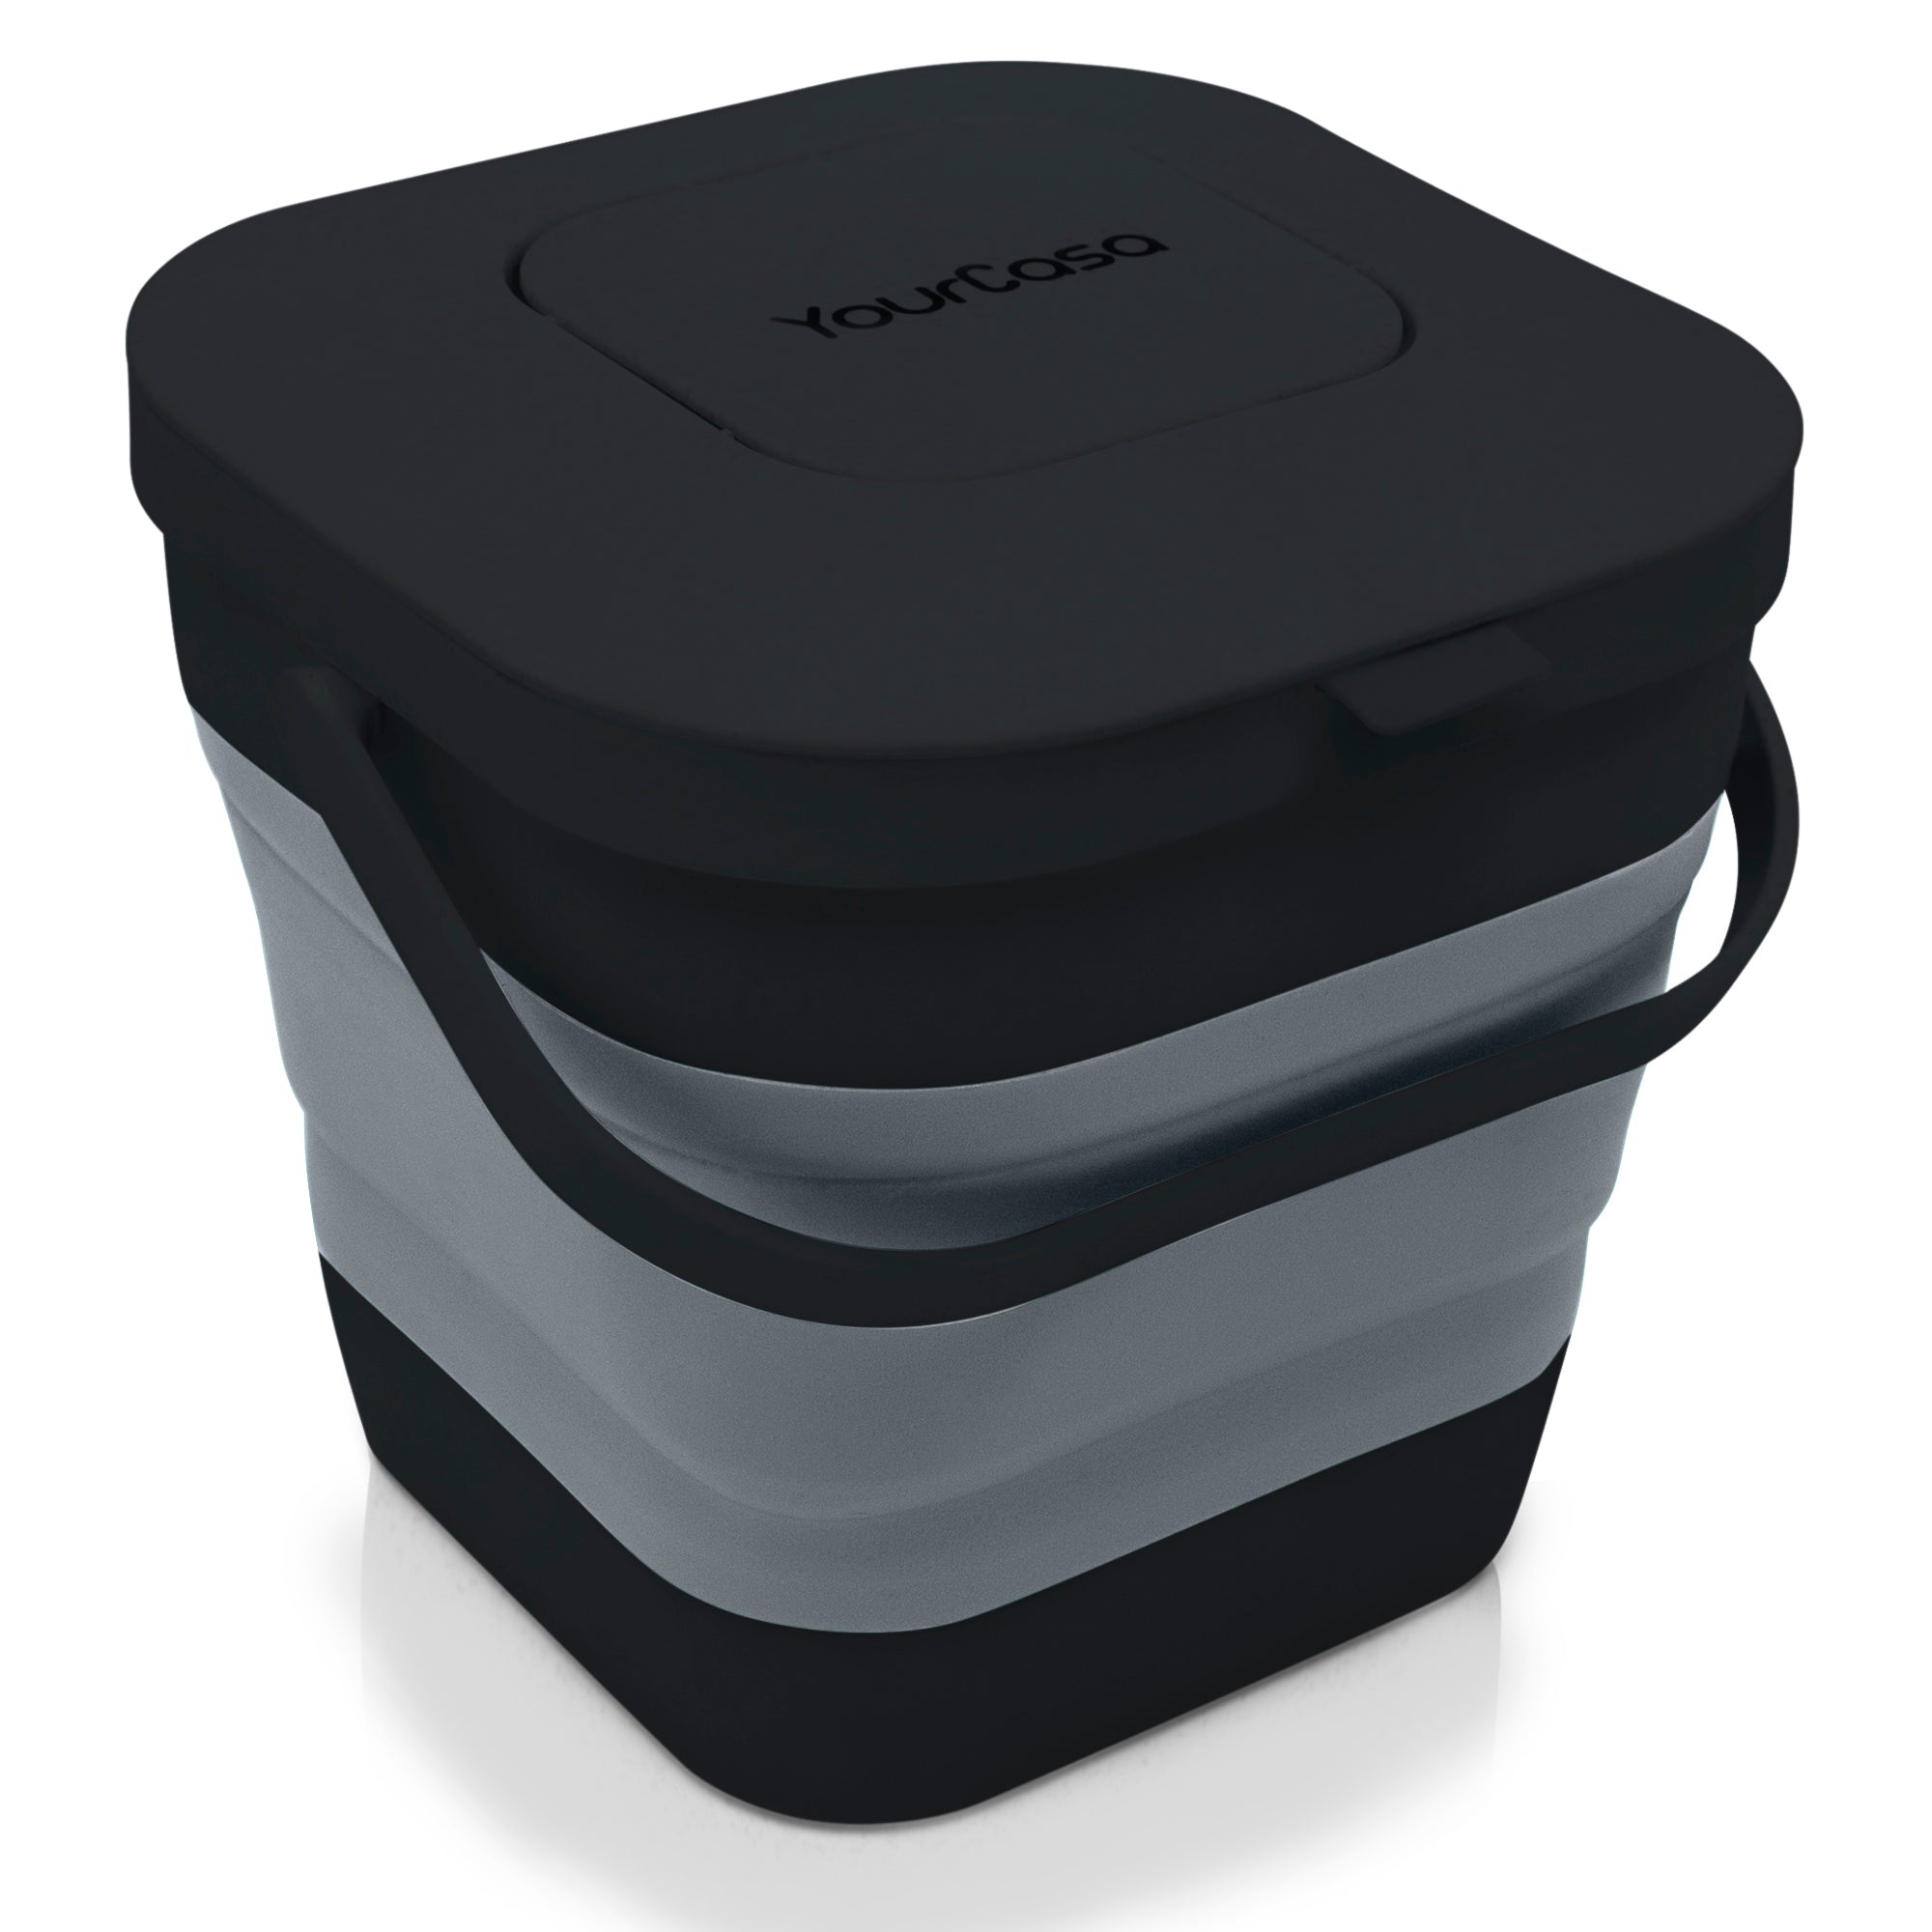 YourCasa zusammenklappbarer Komposteimer 4l in Schwarz und Grau für Küchenbioabfälle, geruchsdicht und abwaschbar